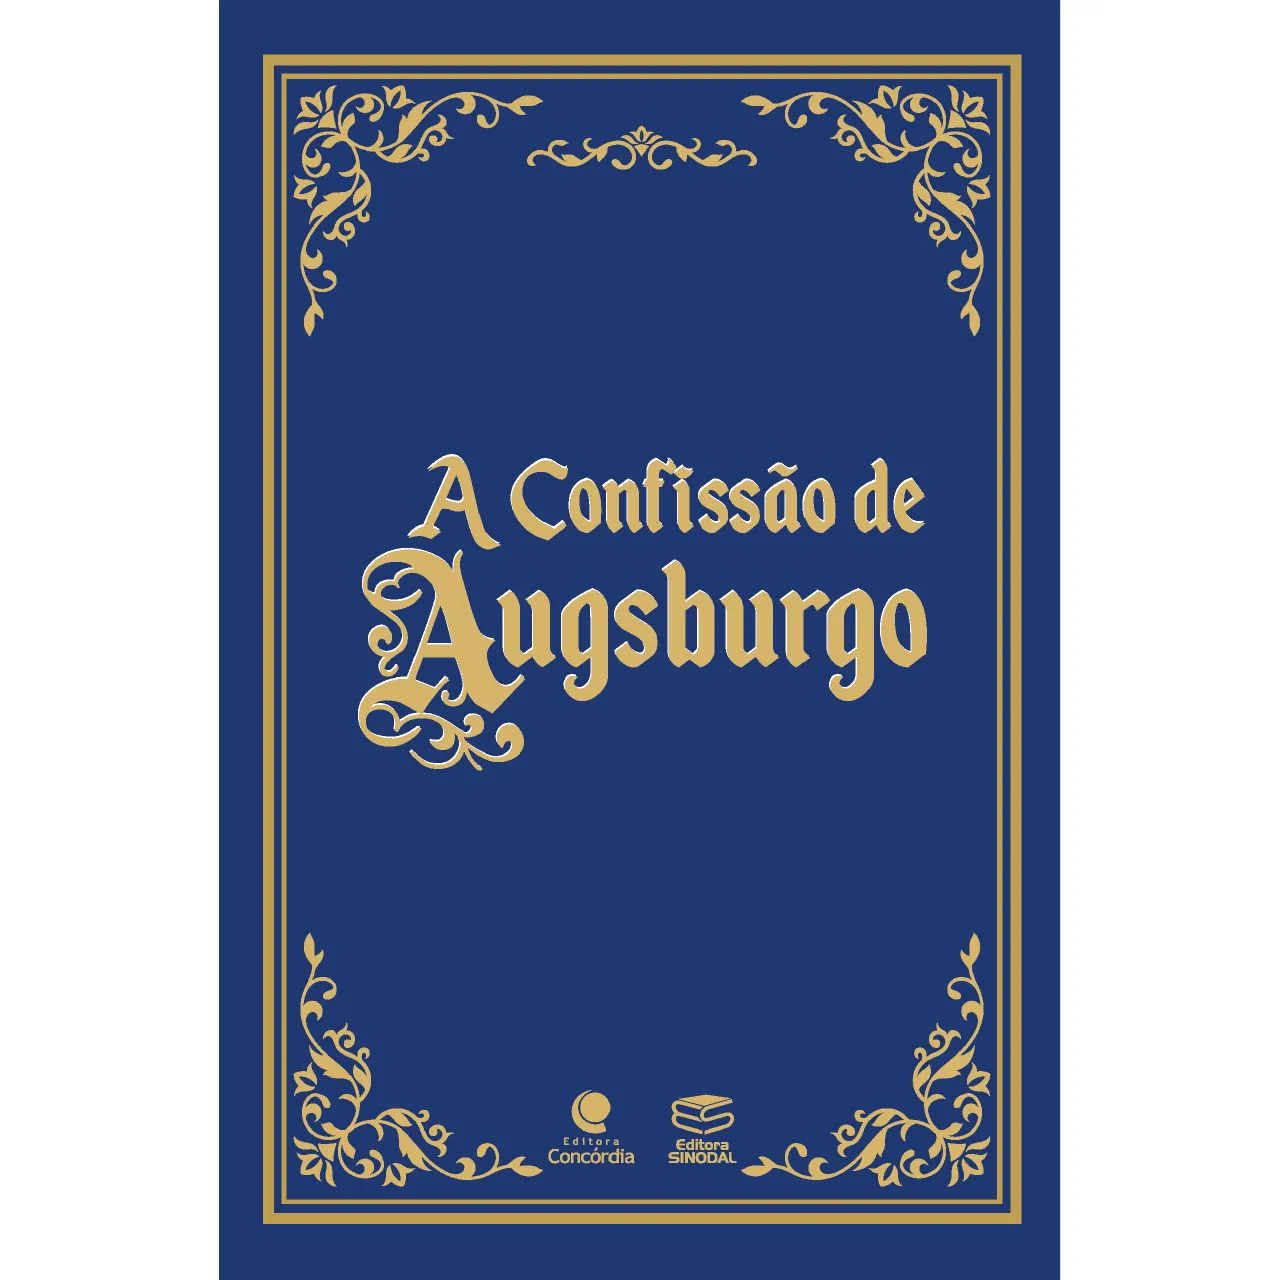 A Confissão De Augsburgo 